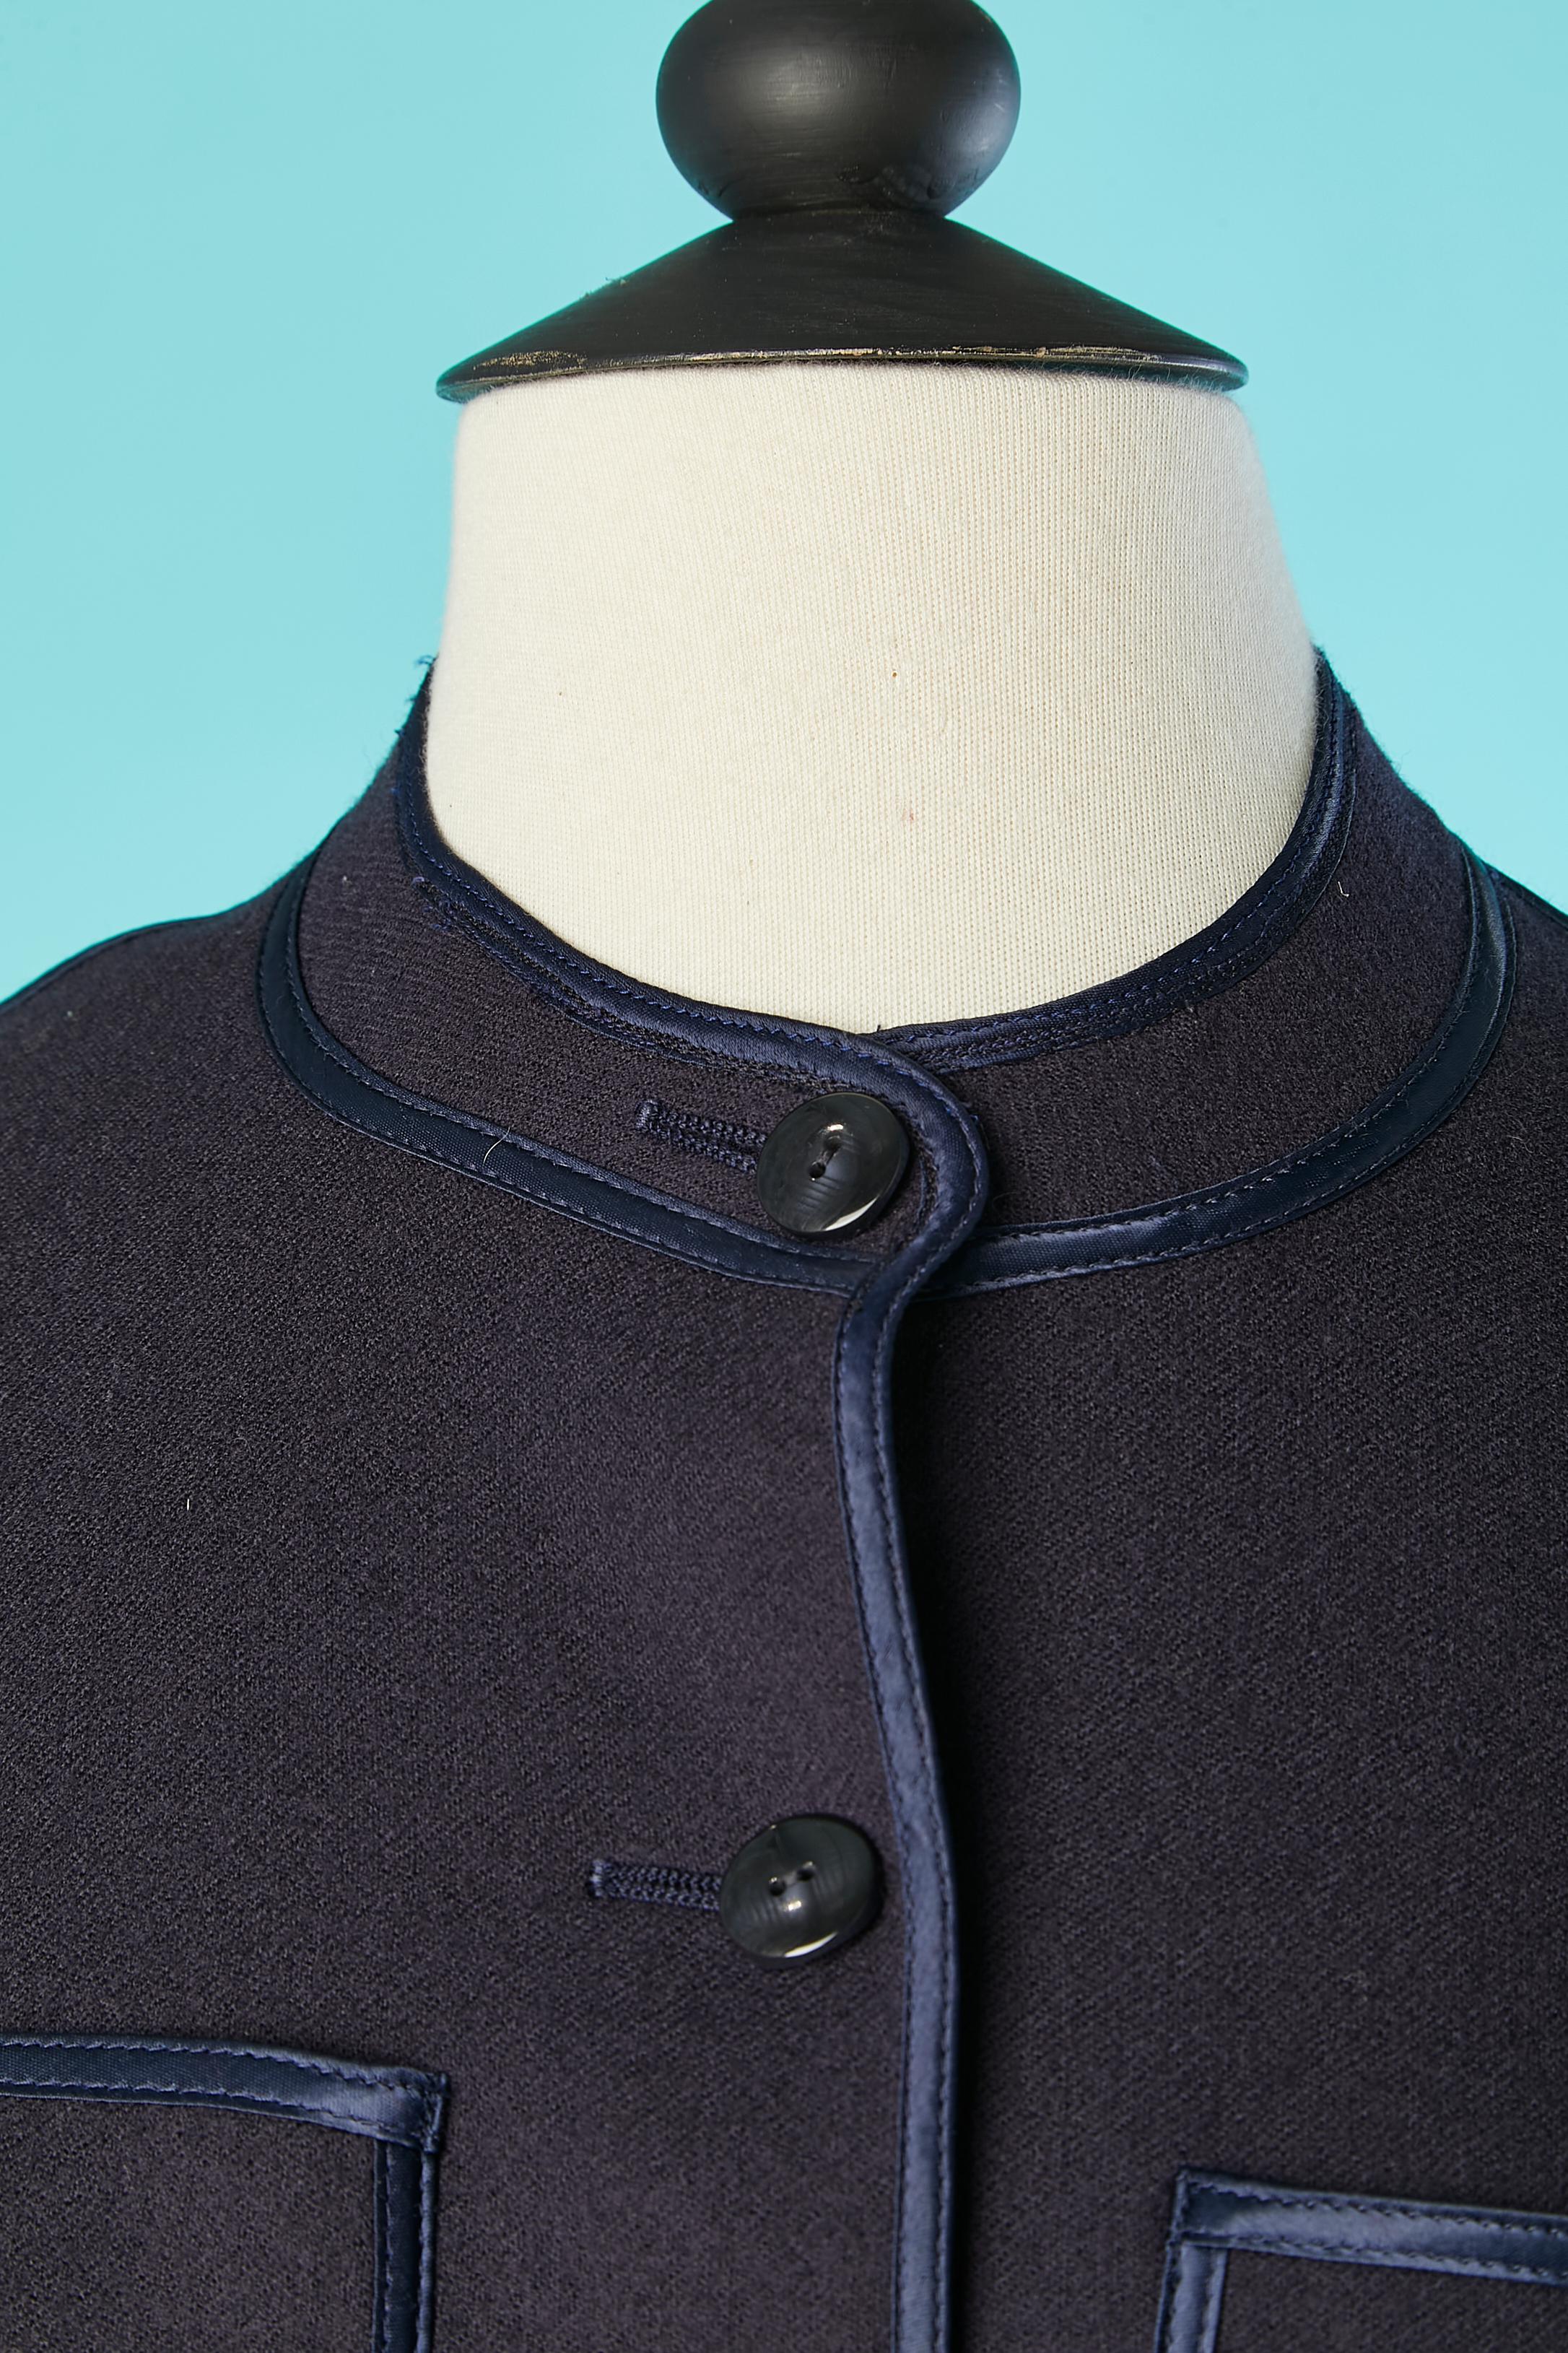 Veste courte en laine bleu marine avec passepoil en ruban de satin. Pas de doublure. 
TAILLE 38 (Fr) 6 (US)